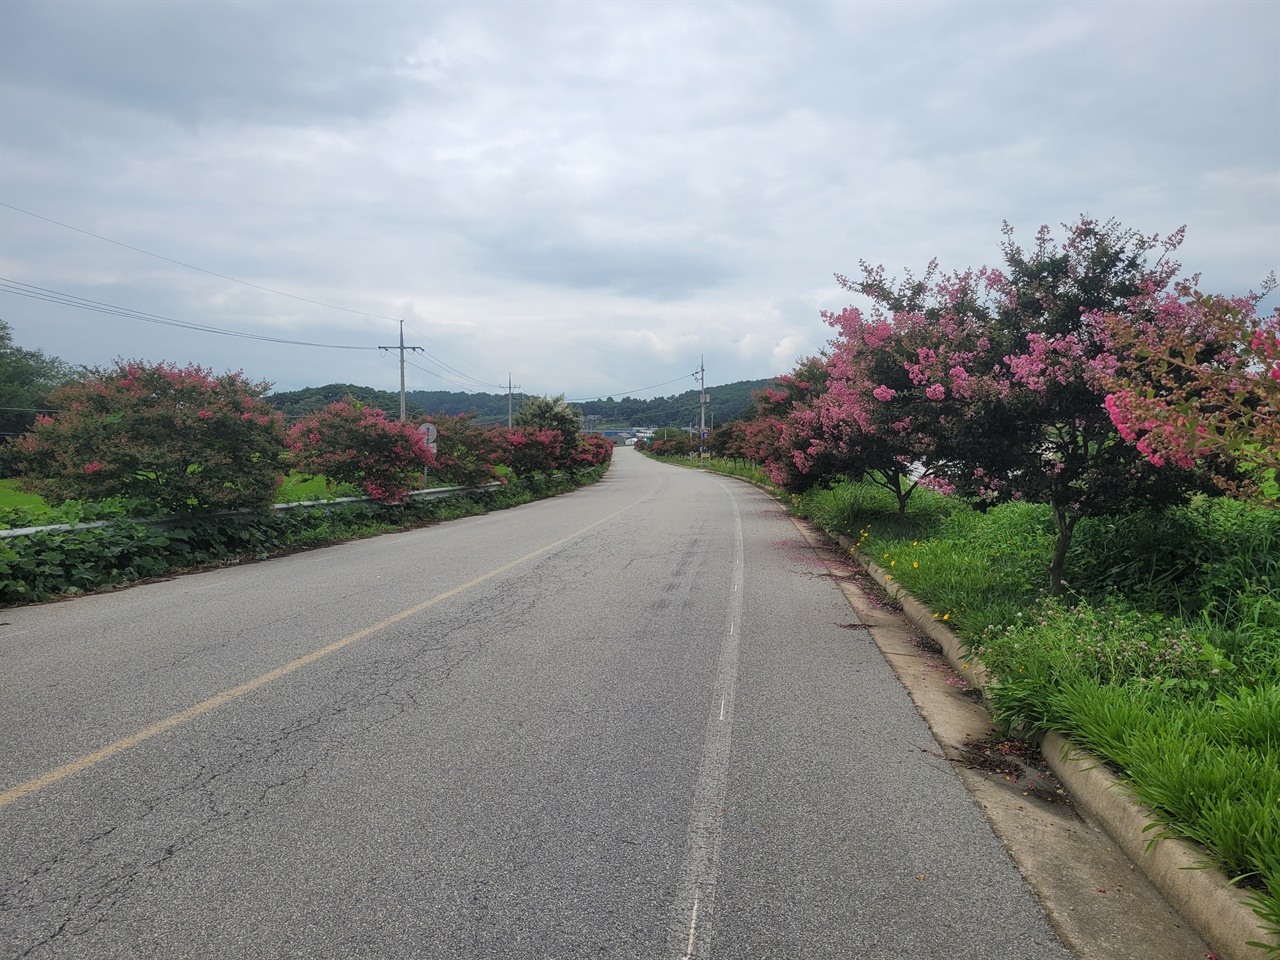 7월의 네 번째 주말을 맞아 찾은 배롱나무 가로수길은 이제 막 꽃을 피우기 시작했다. 그러면서, 도로 주변의 초록색과 어울린 모습이 수채화 같기도 했다.